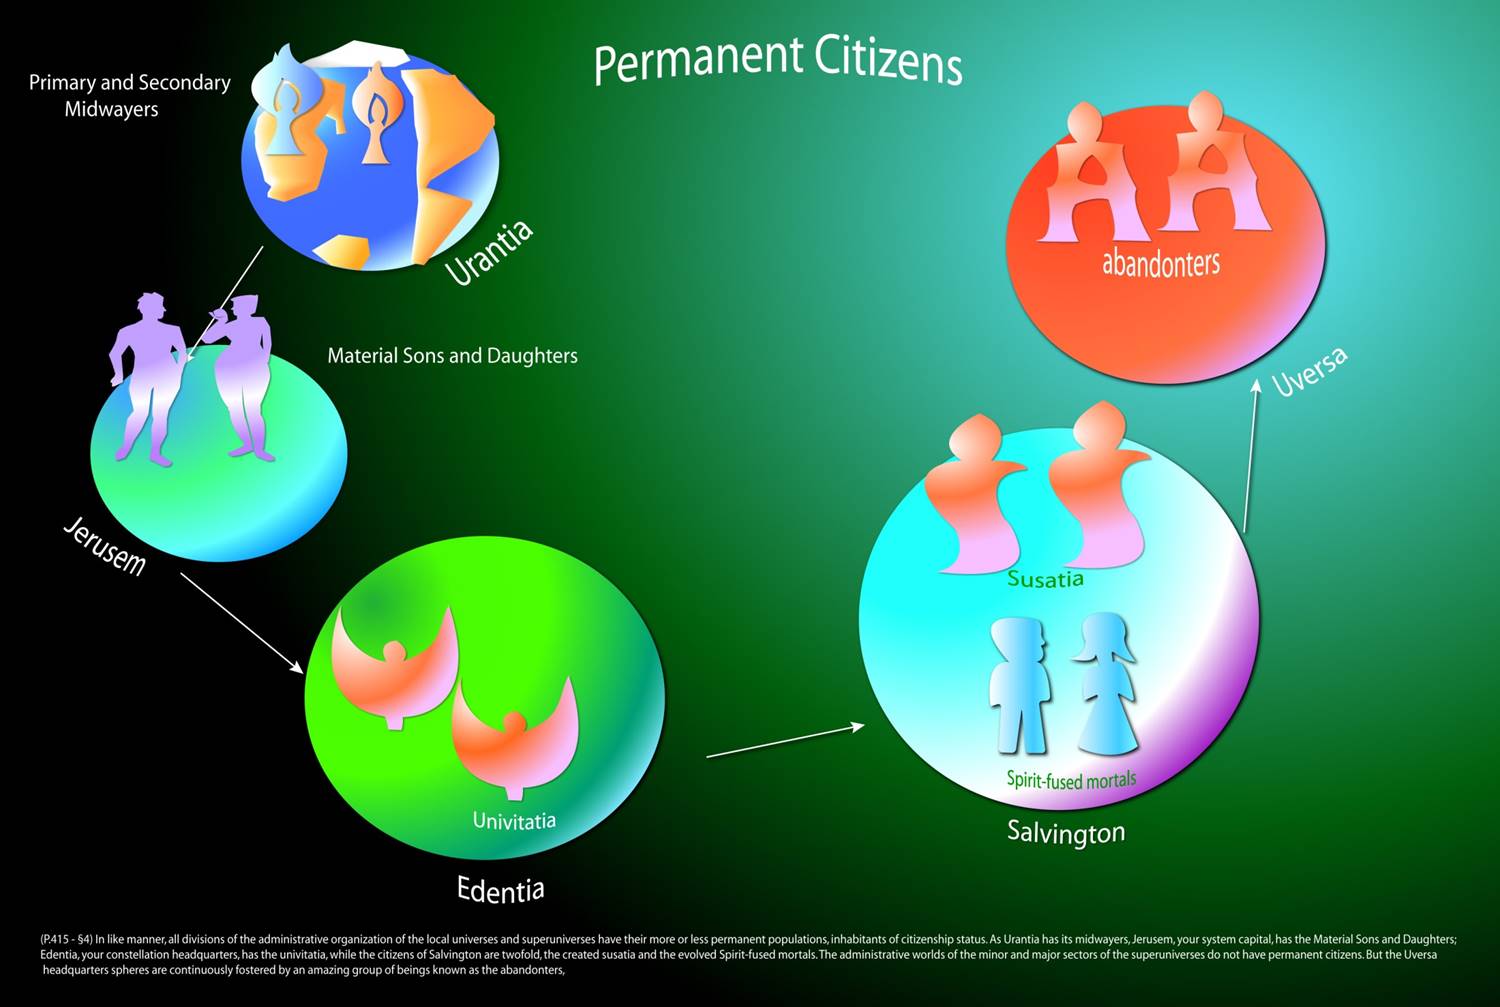 Permanent citizens